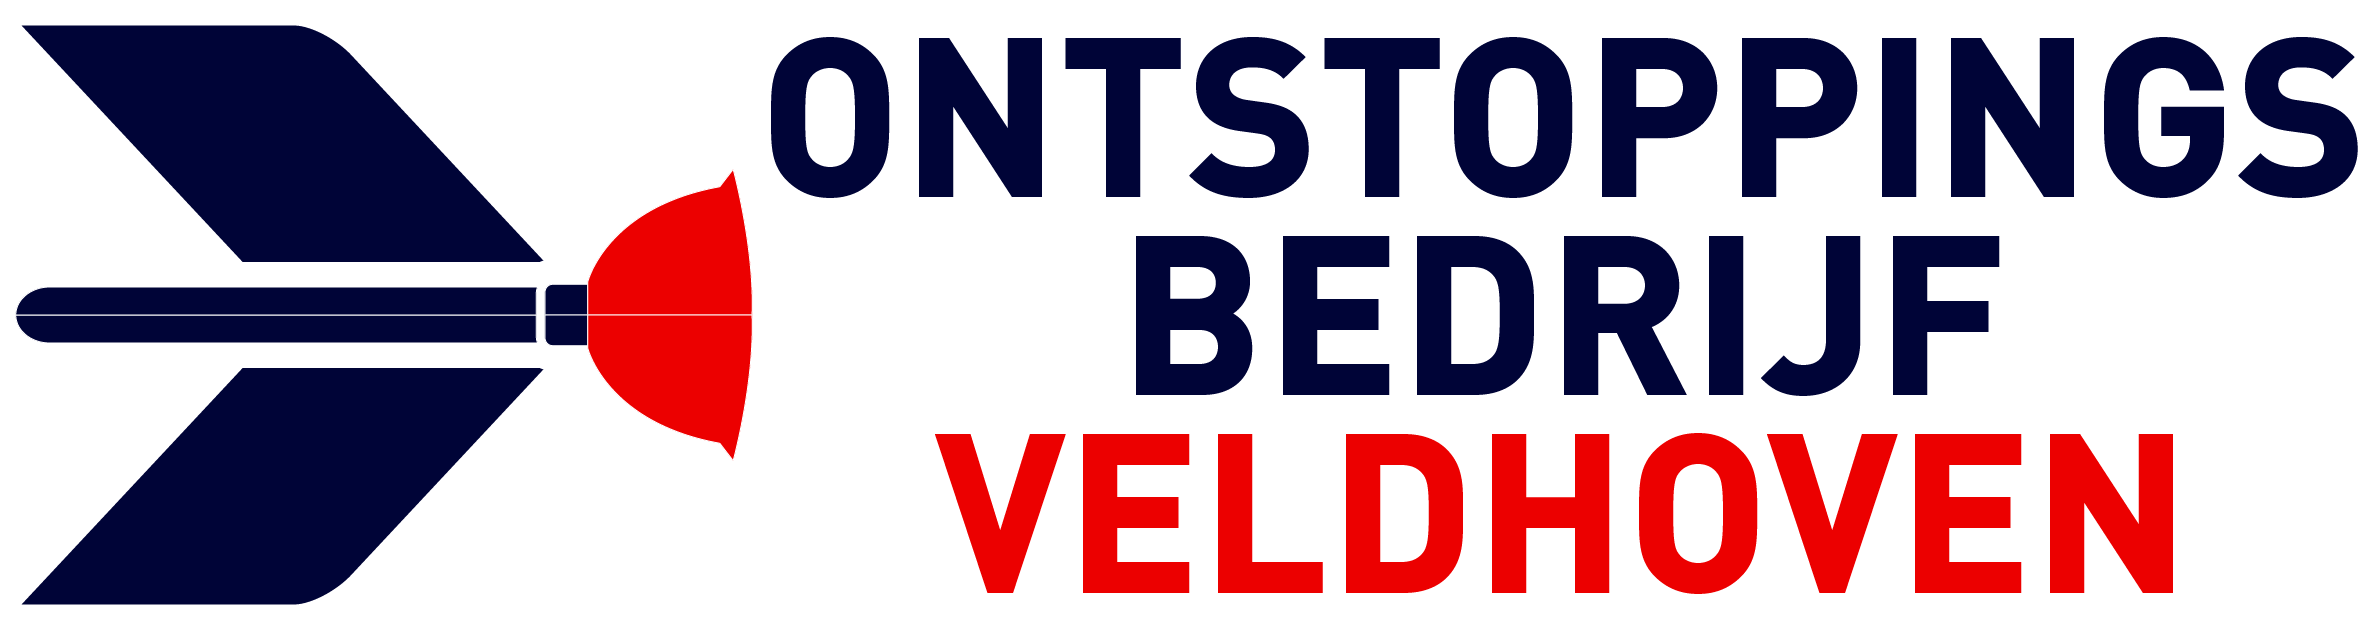 Ontstoppingsbedrijf Veldhoven logo